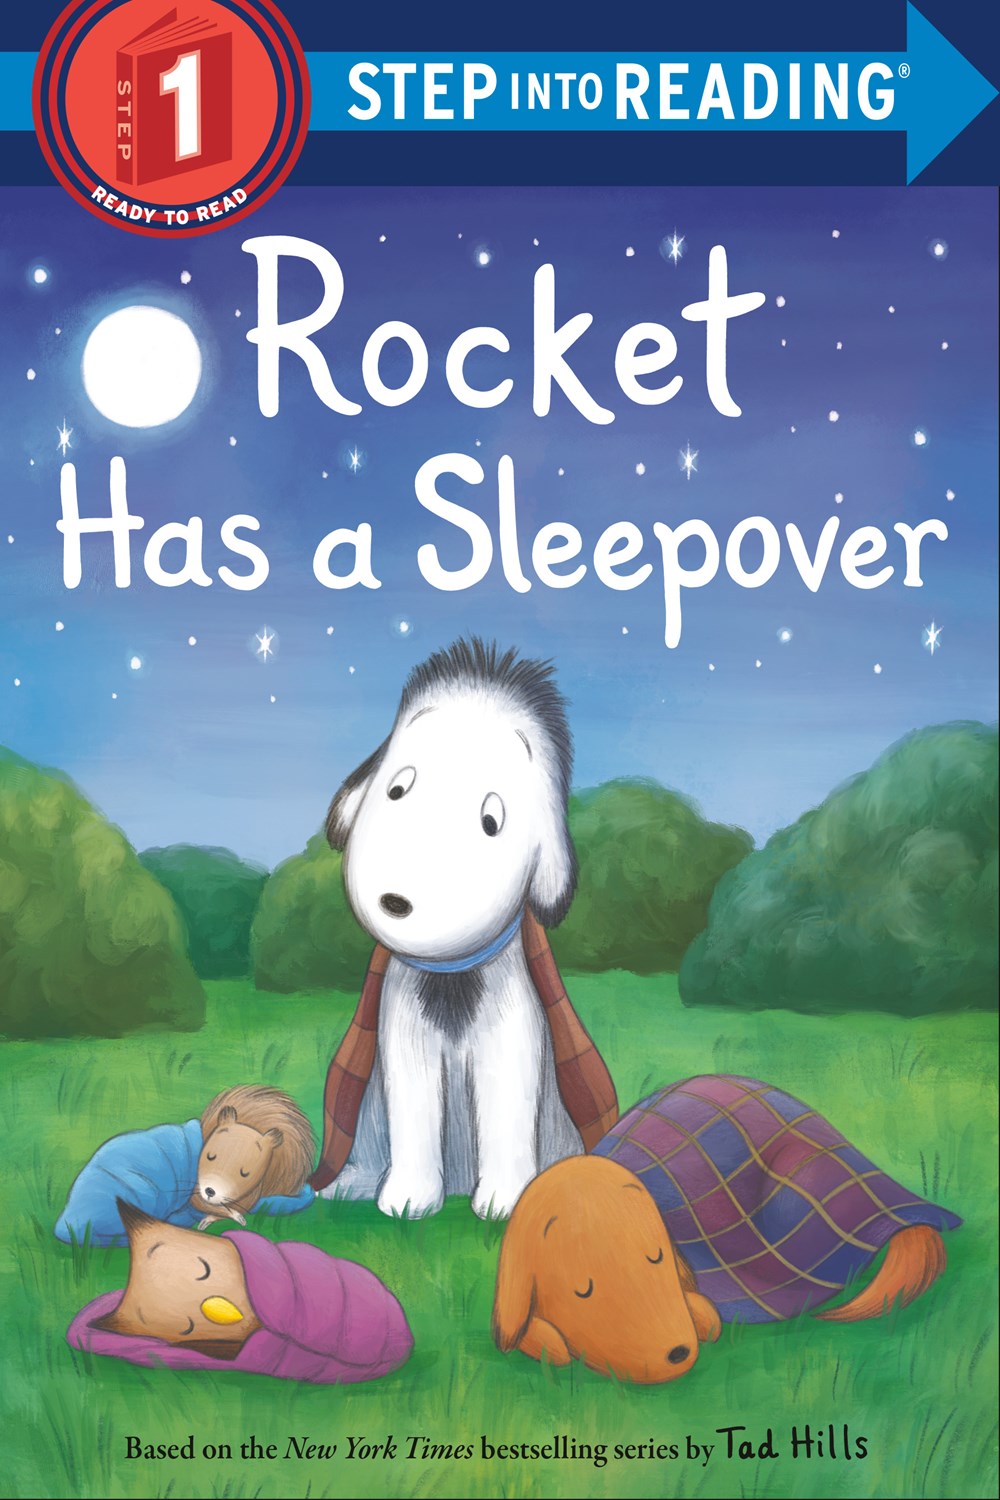 SIR(Step1):Rocket Has a Sleepover